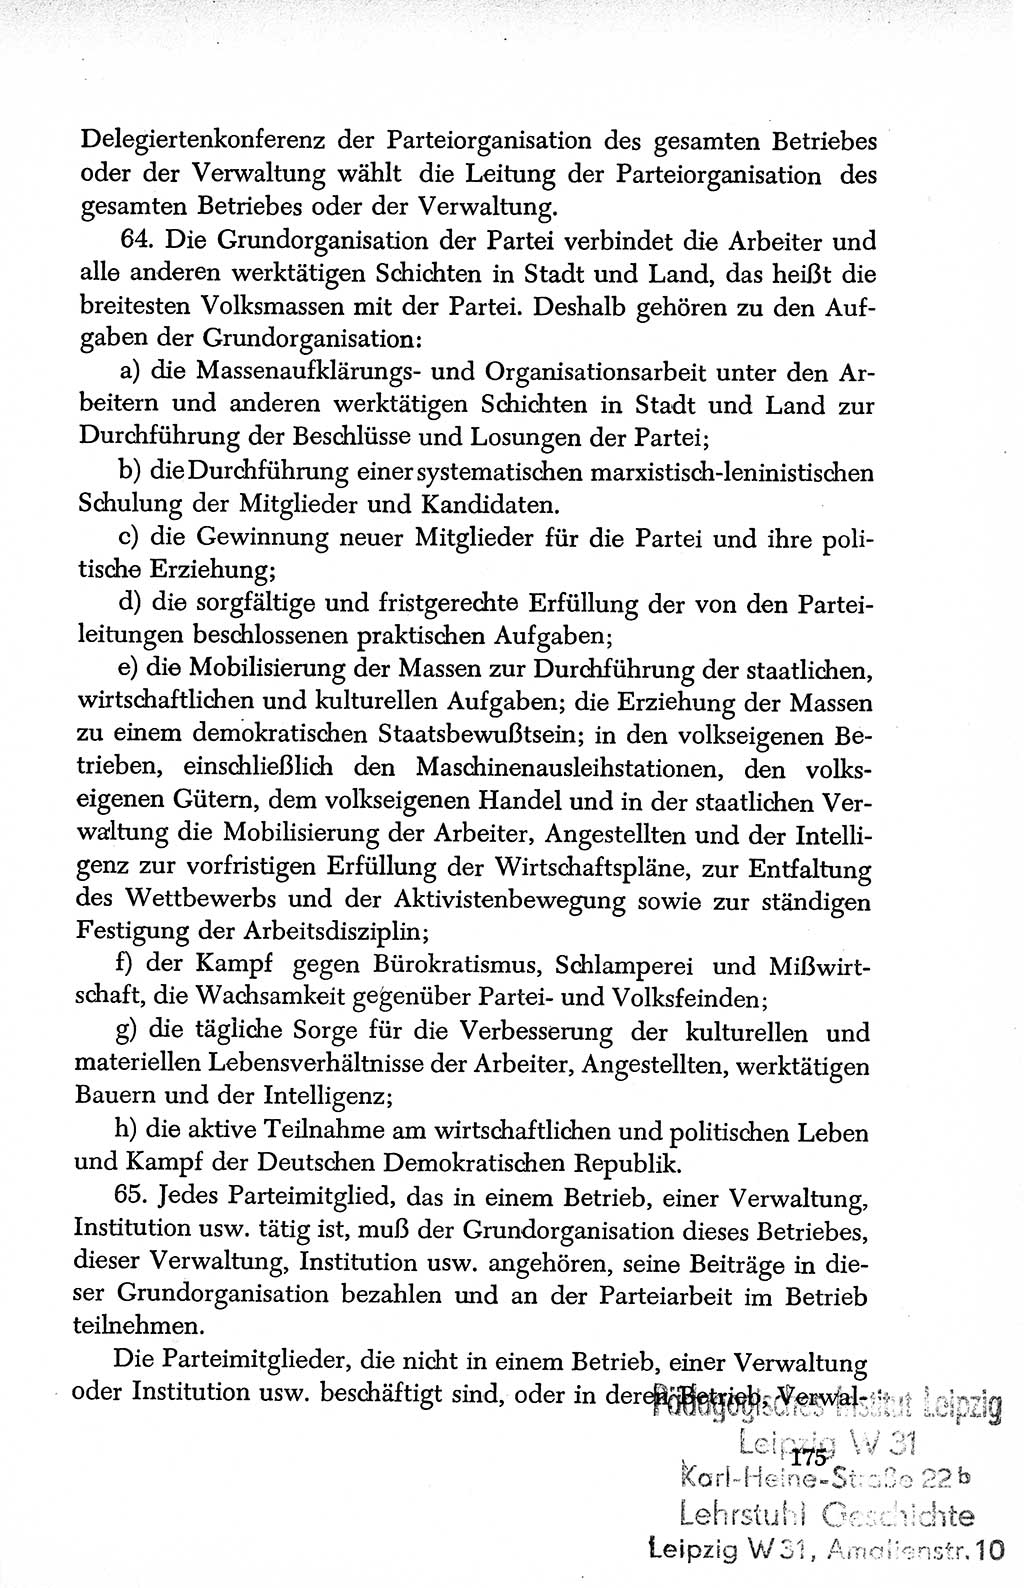 Dokumente der Sozialistischen Einheitspartei Deutschlands (SED) [Deutsche Demokratische Republik (DDR)] 1950-1952, Seite 175 (Dok. SED DDR 1950-1952, S. 175)